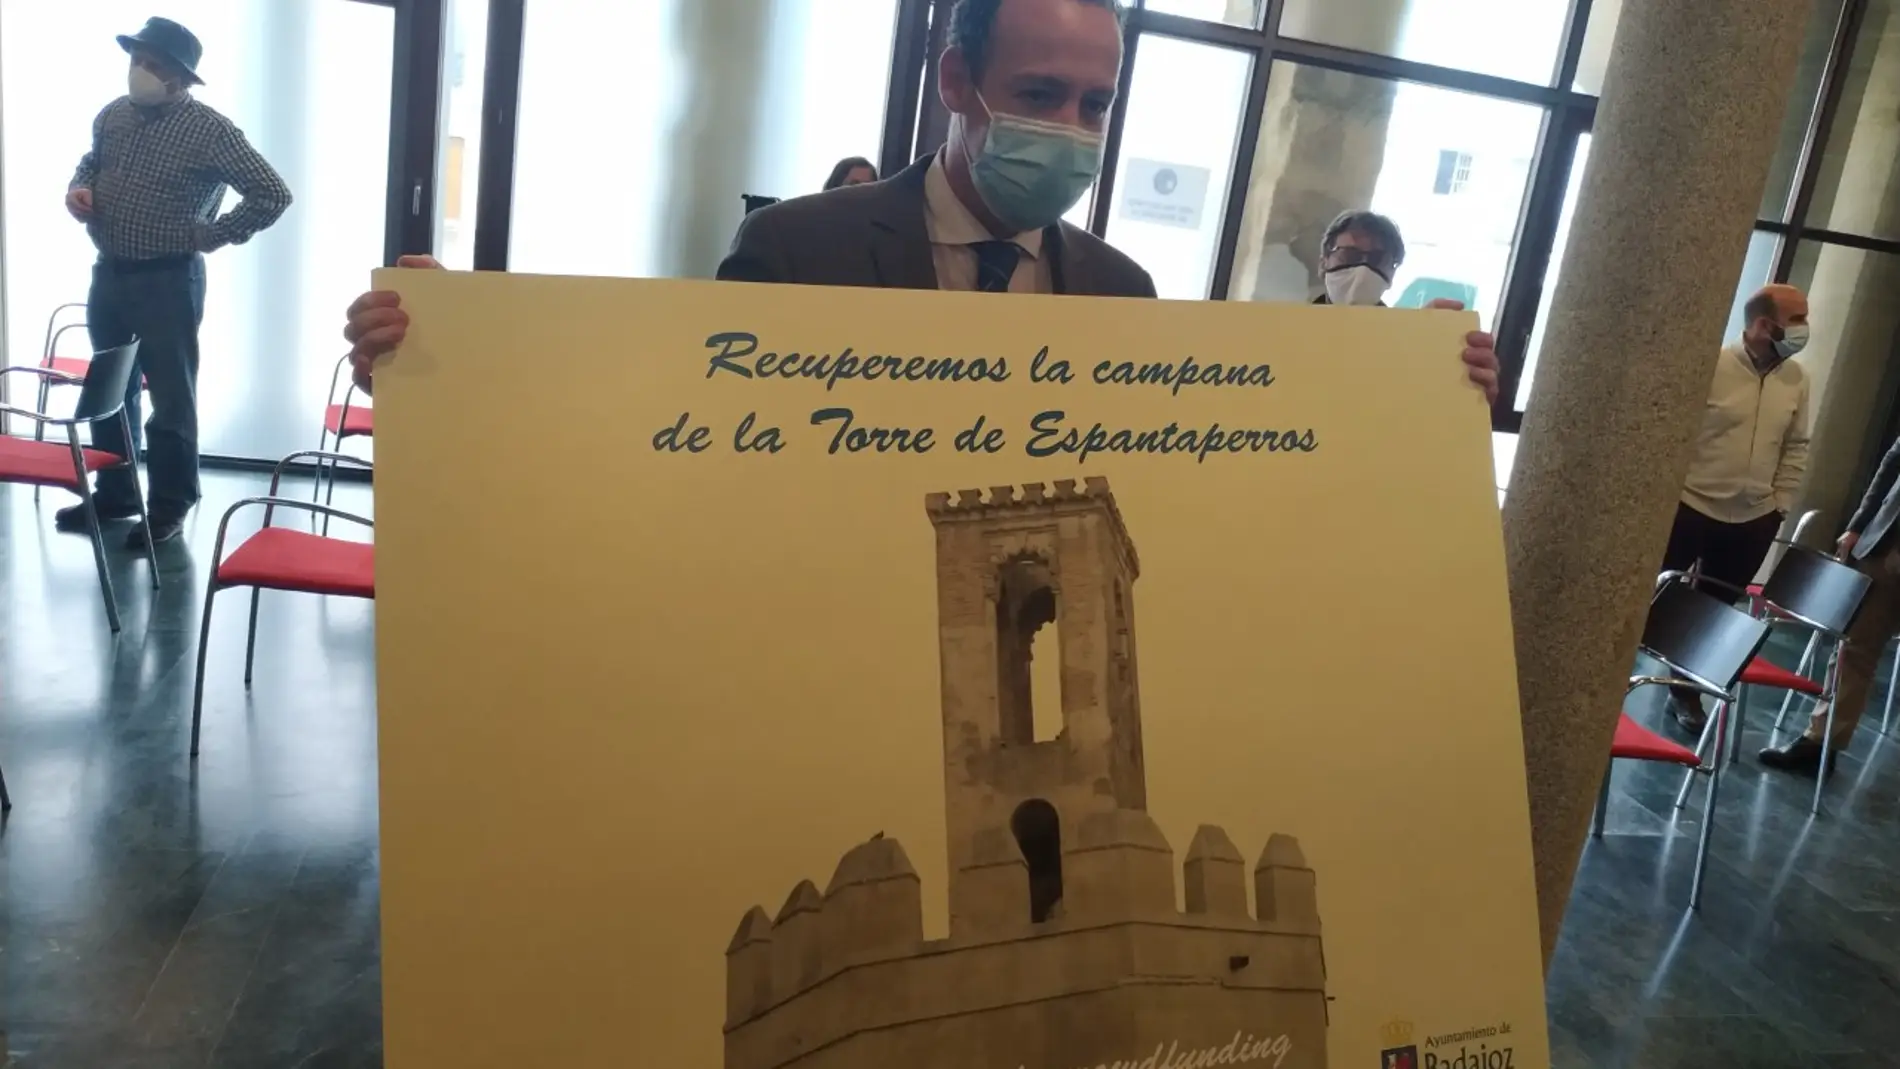 El Ayuntamiento de Badajoz lanza una campaña de mecenazgo para costear la campana que prevé instalar en la Torre de Espantaperros.